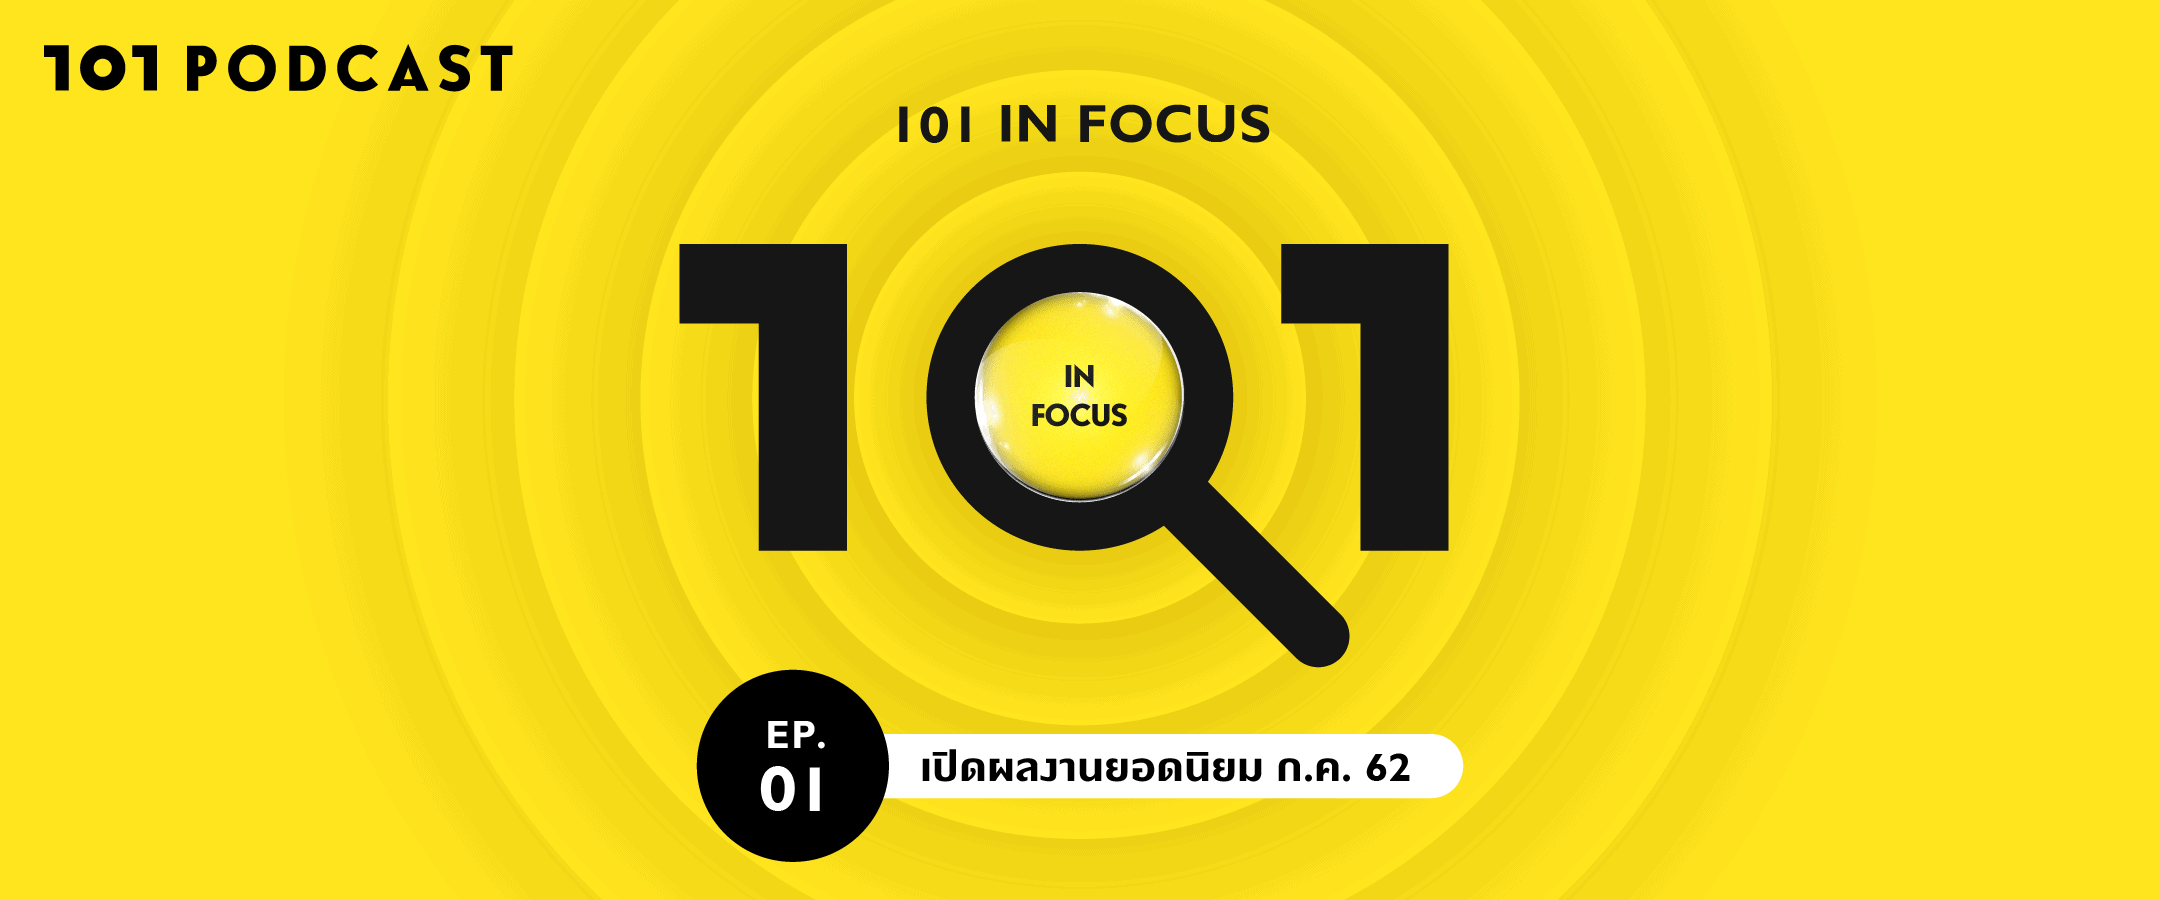 101 in focus EP.1 : เปิดผลงานยอดนิยม ก.ค. 62